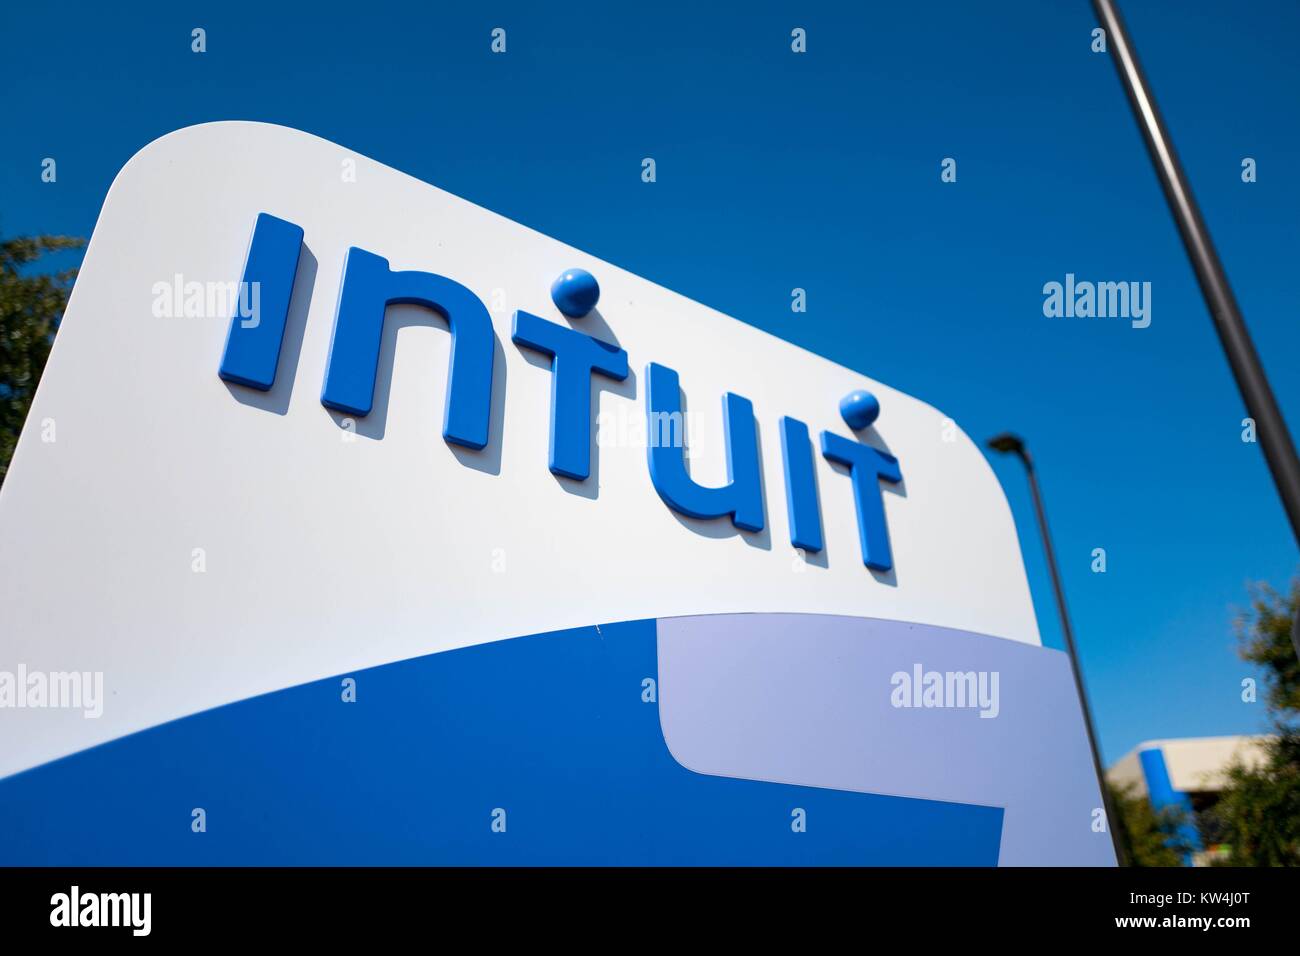 Signage für Financial Software Firma Intuit am Hauptsitz des Unternehmens in der Silicon Valley Stadt Mountain View, Kalifornien, 24. August 2016. Stockfoto